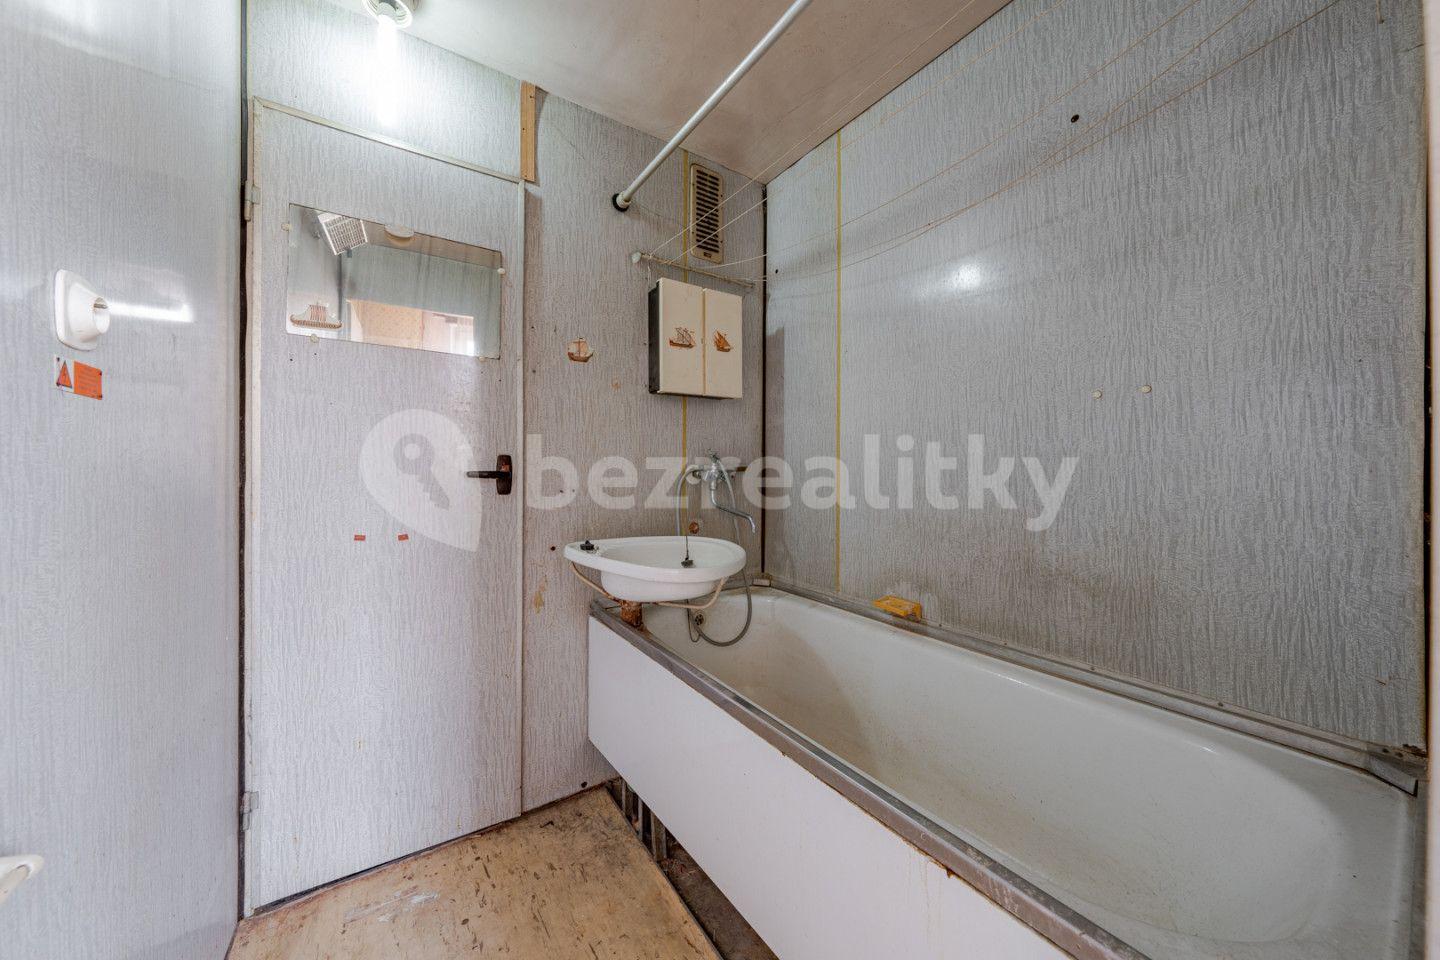 3 bedroom flat for sale, 66 m², Husova, Valašské Meziříčí, Zlínský Region